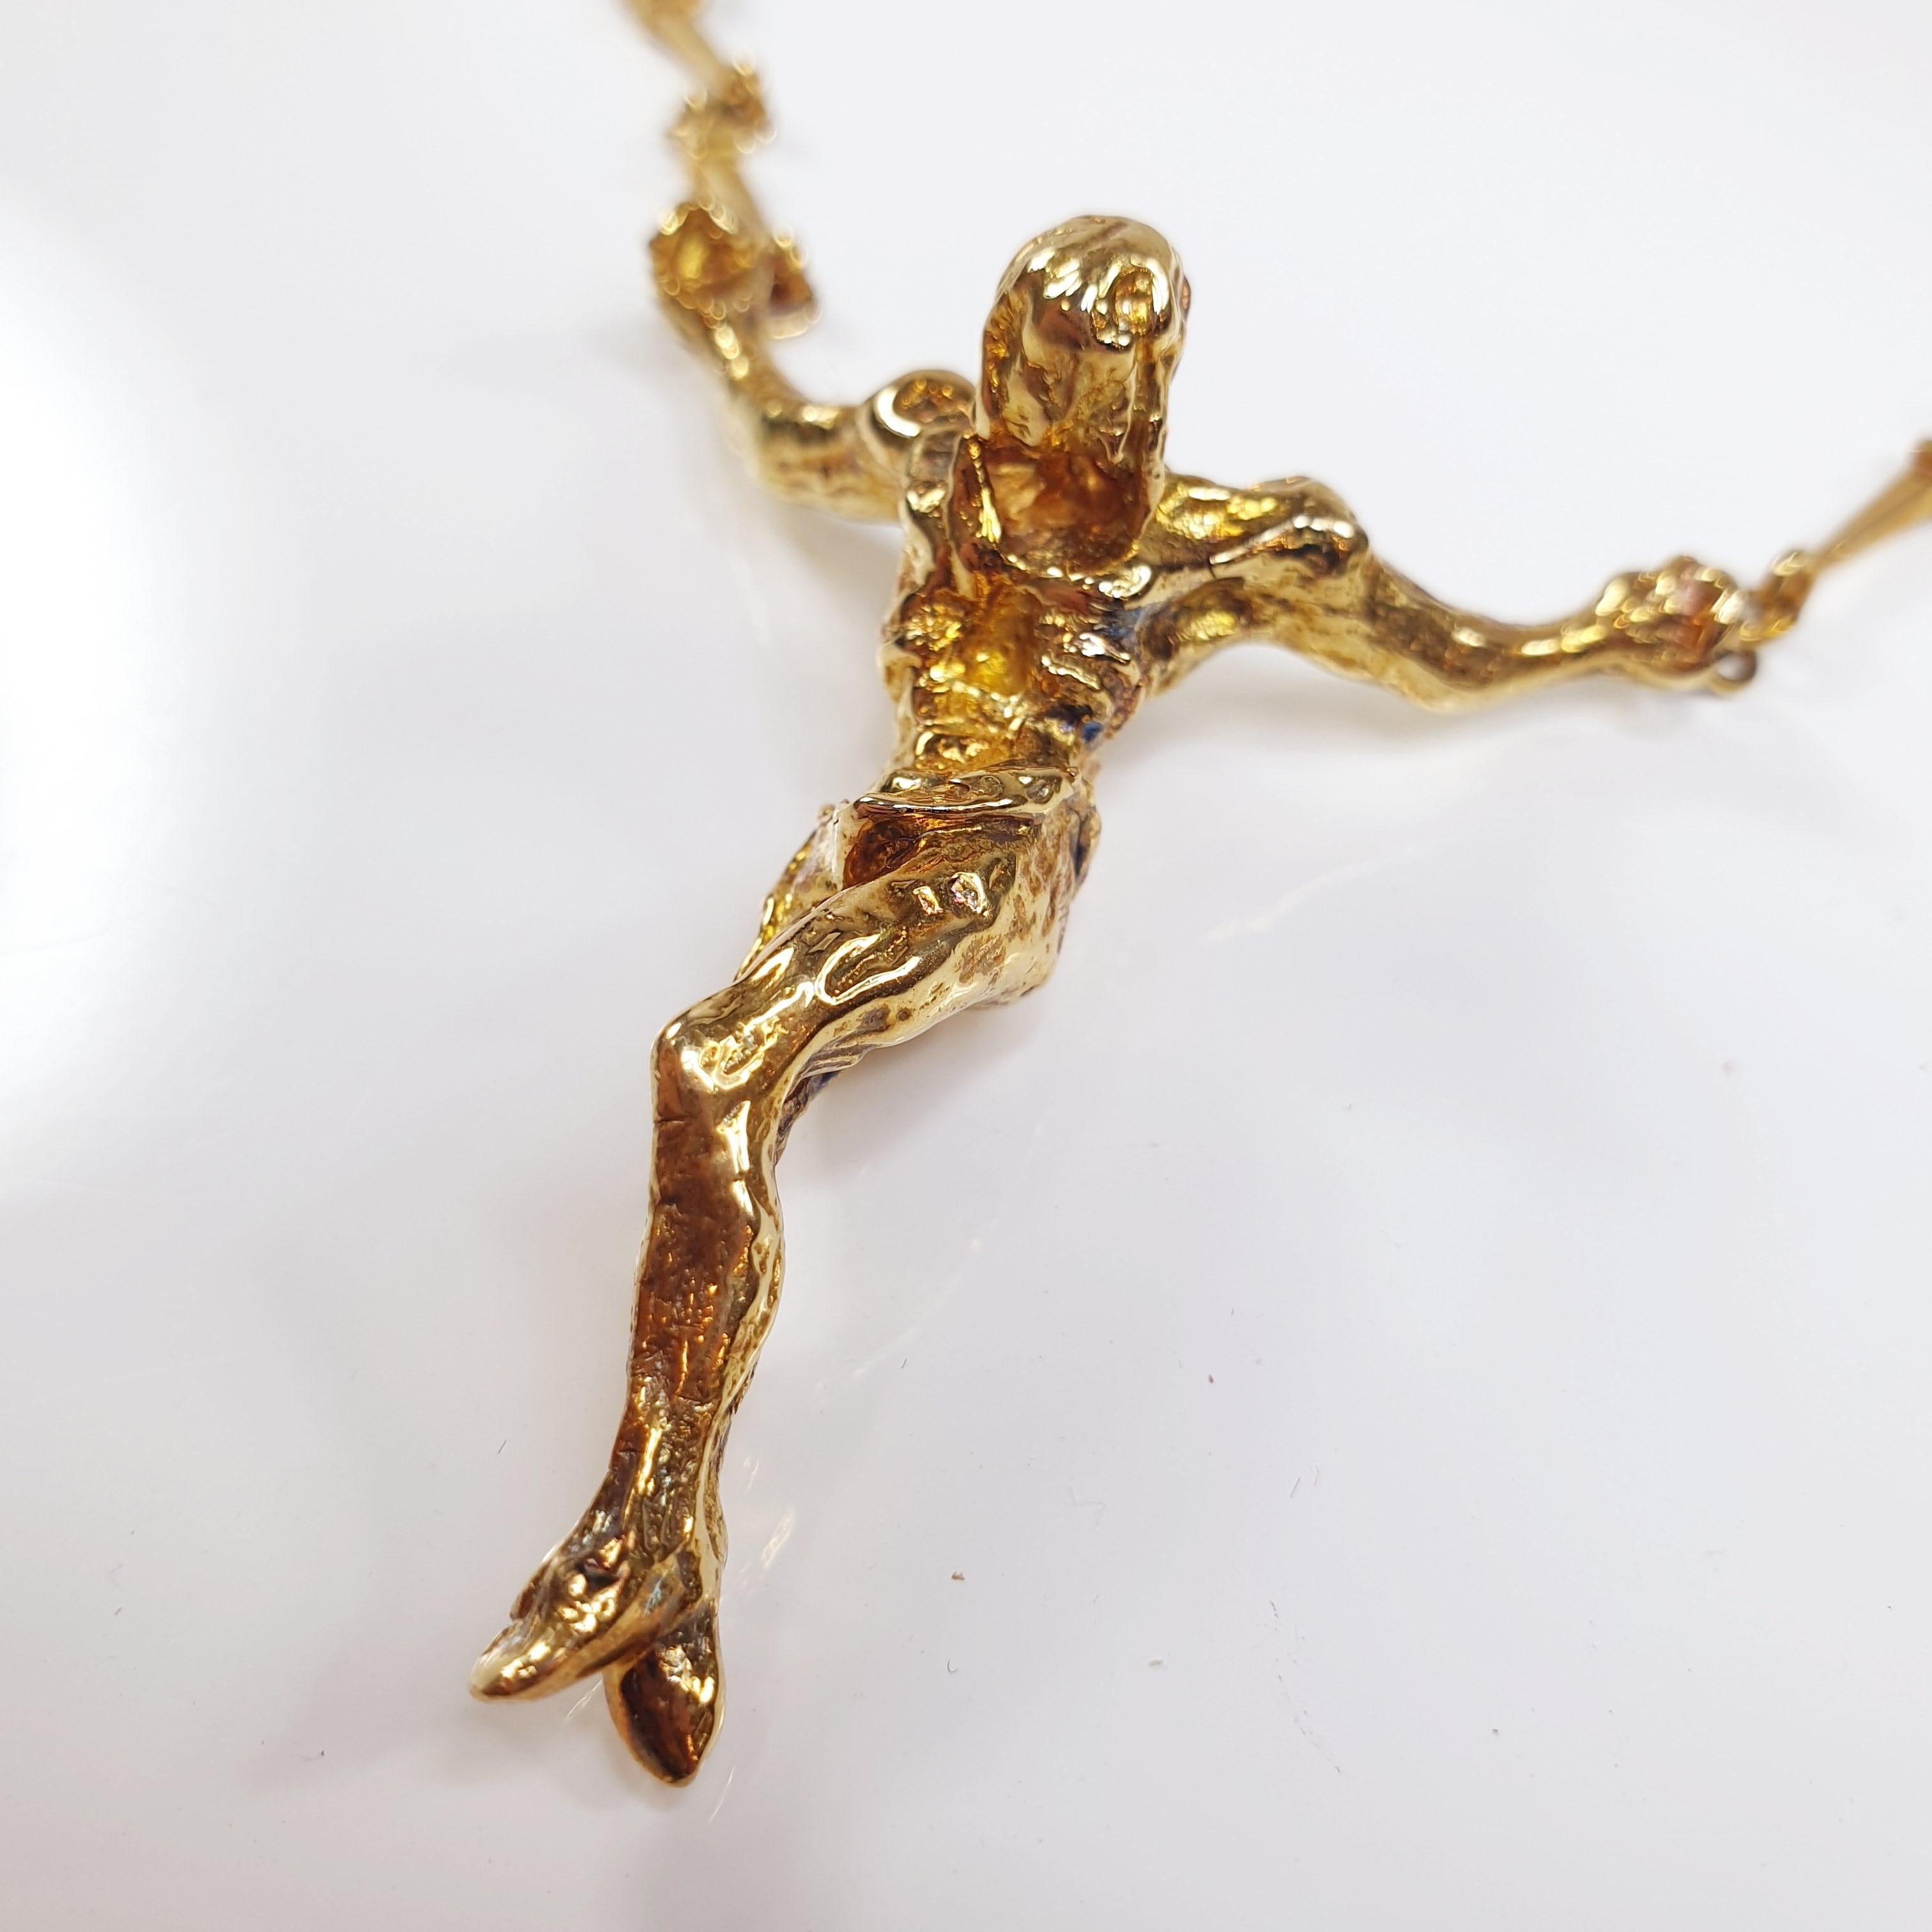 Edition limitée du Christ Salvador Dali en or jaune 18k  Collier / Bracelet avec pendentif Saint Jean sur la Croix 
Il s'agit d'une pièce numérotée en édition limitée des années 1970, numéro 108 sur 1000 jamais fabriqués.
Ce collier est accompagné